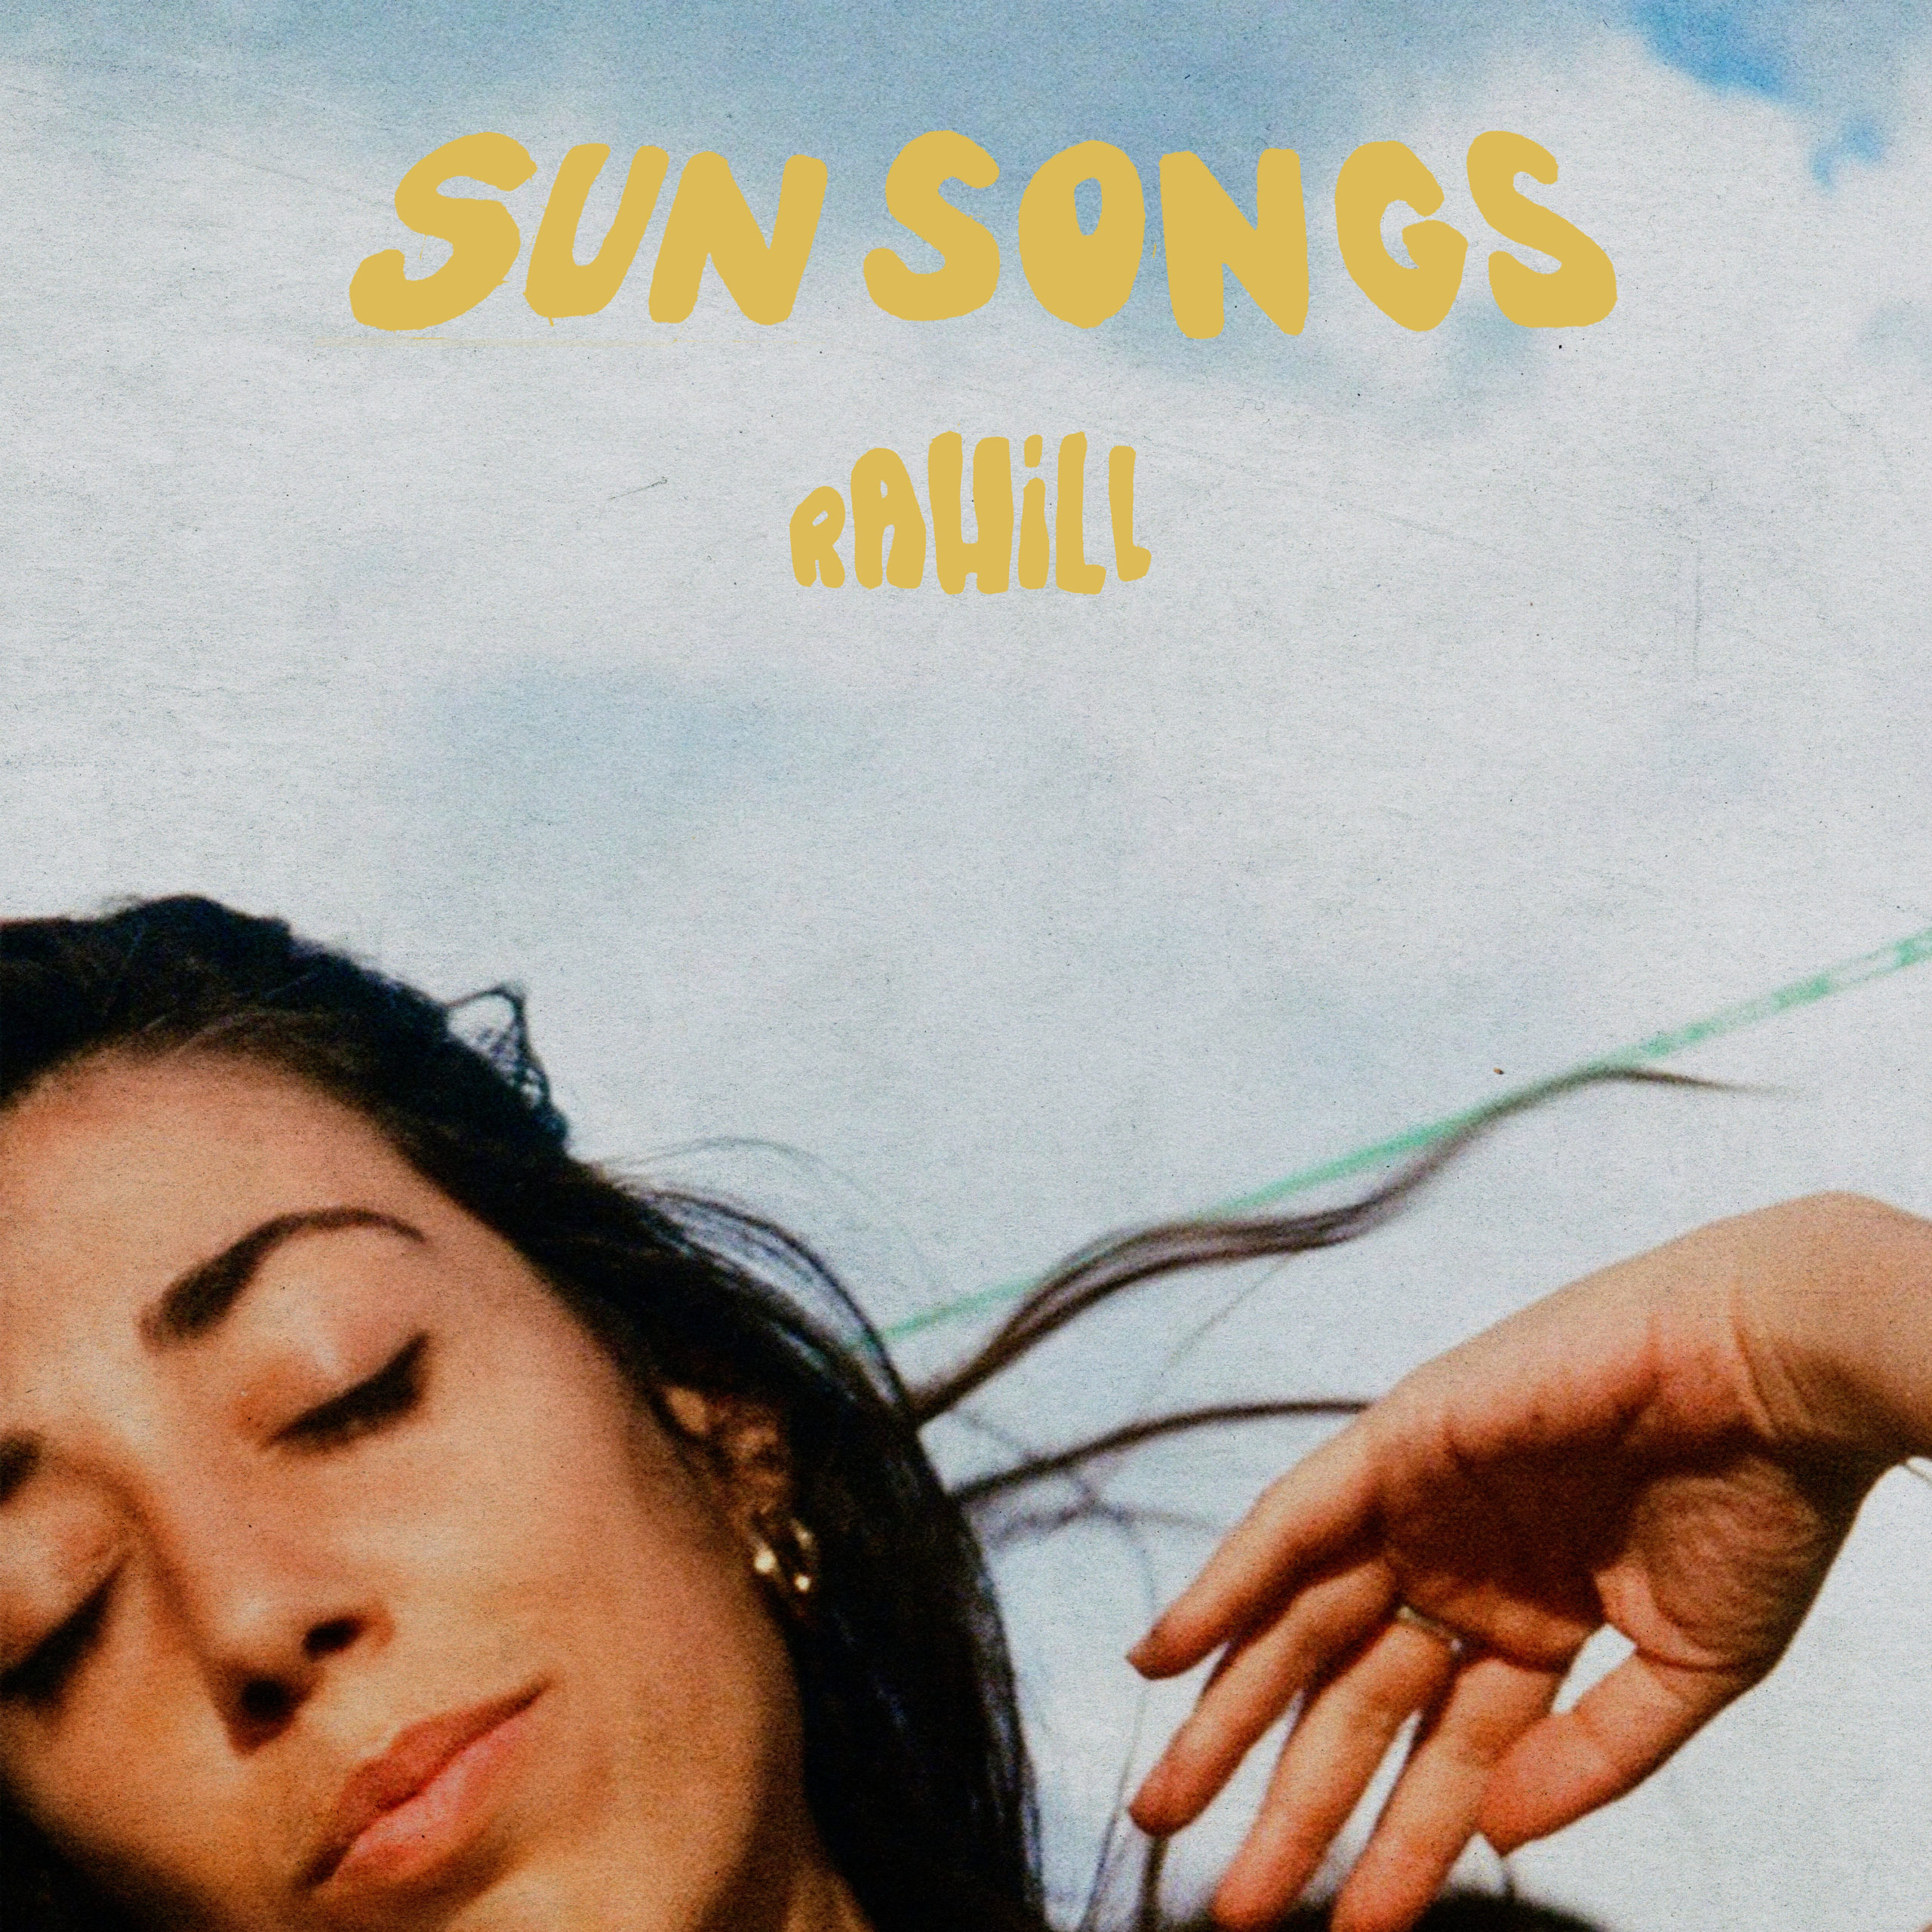 You are currently viewing L’artiste irano américaine Rahill annonce la sortie de 2 singles extraits de son EP solo <em>Sun Songs</em> via Big Dada, sous label de Ninja Tune, disponible le 4 novembre 2022